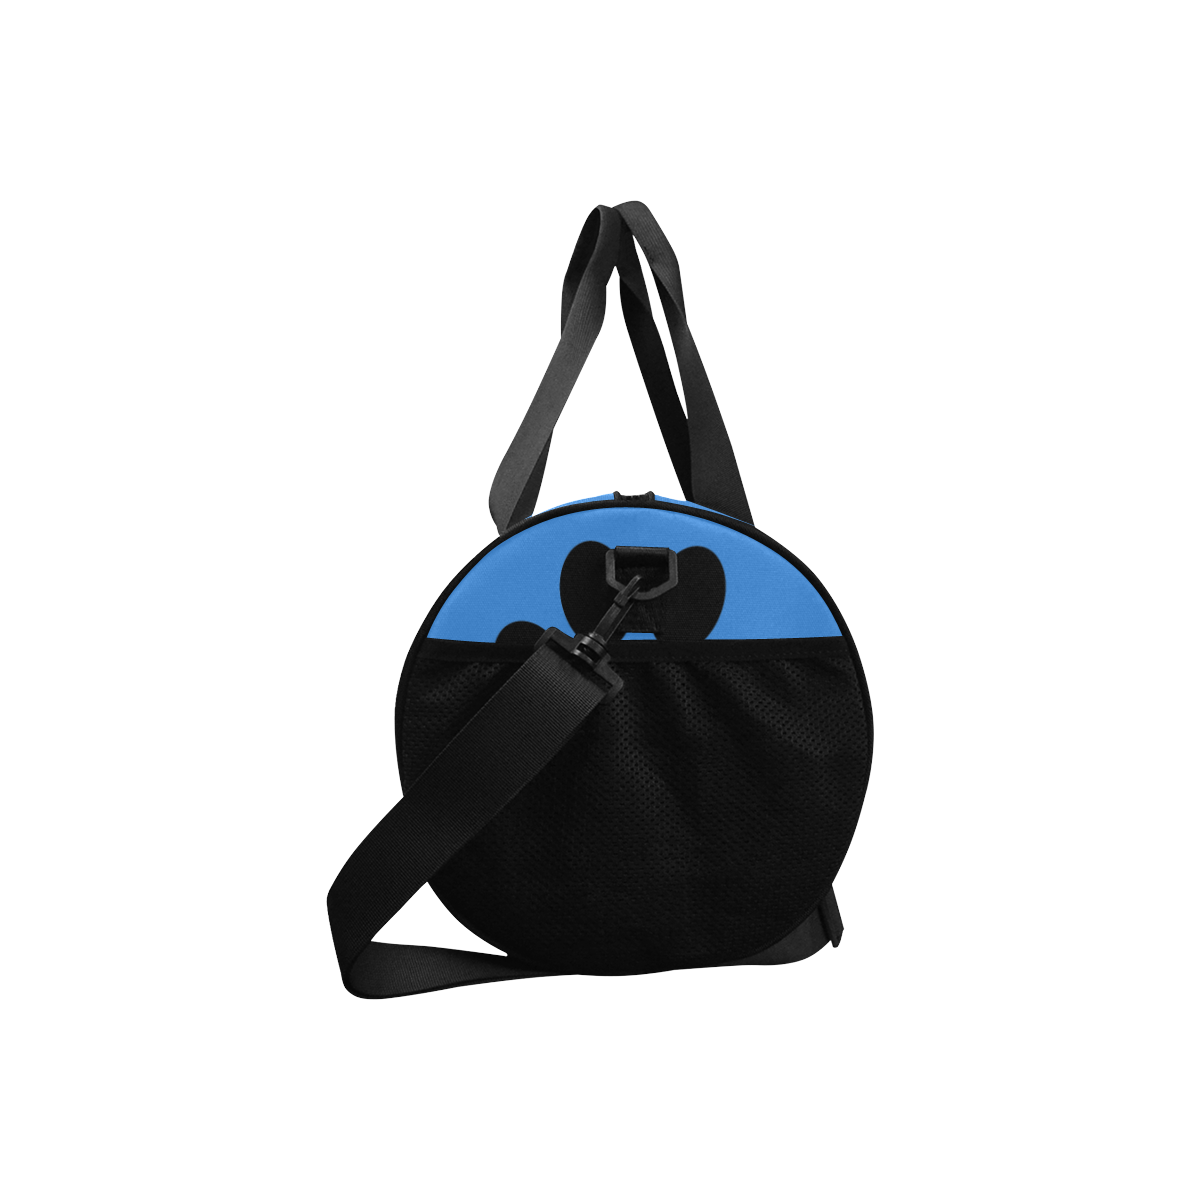 BooBooFace Large Duffel Bag Blue Duffle Bag (Model 1679)